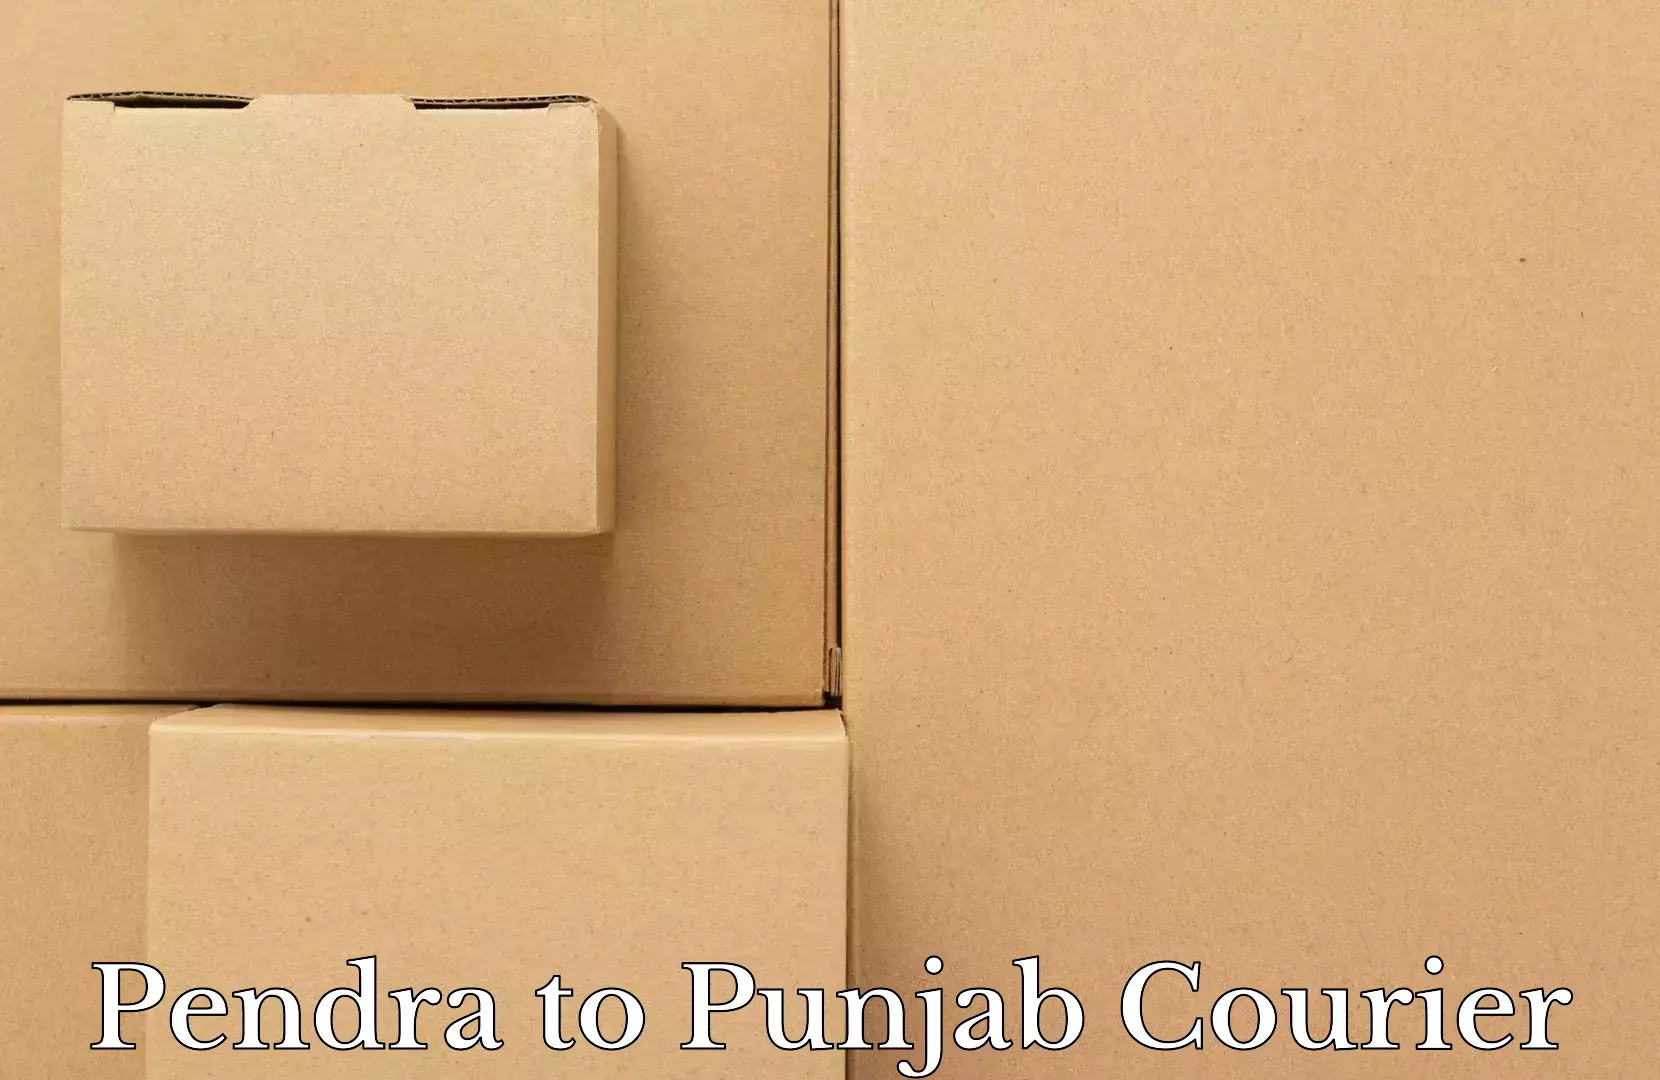 Luggage transit service Pendra to Punjab